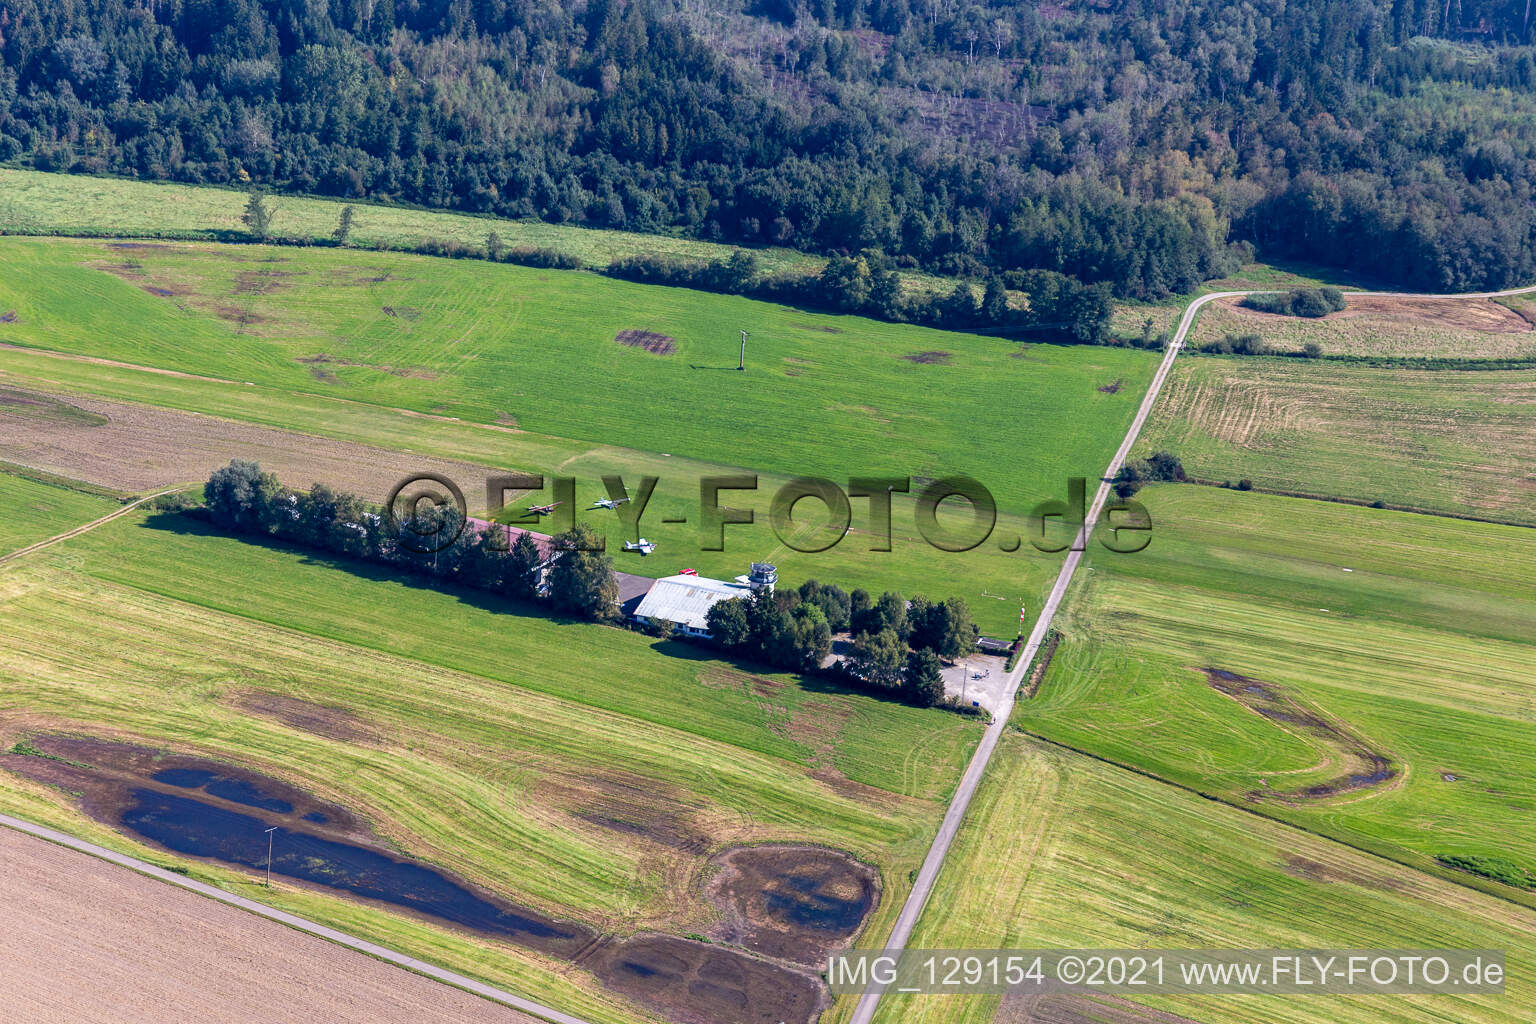 Vue aérienne de Aéroport Reute à le quartier Reute in Bad Waldsee dans le département Bade-Wurtemberg, Allemagne